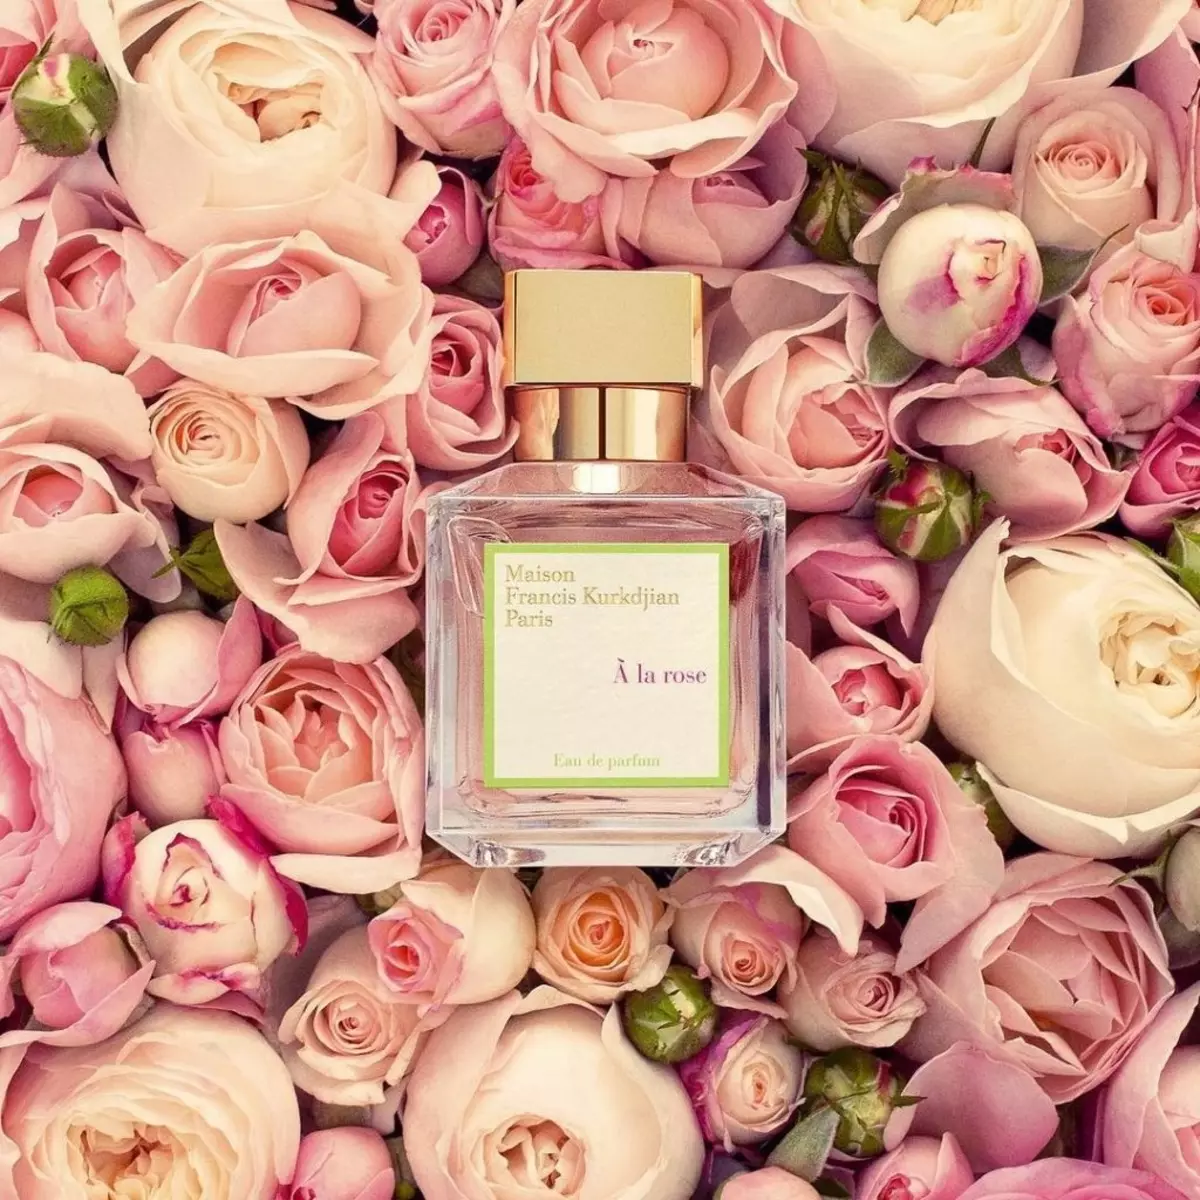 Perfumery Maison Francis Kurkdjian (30 ảnh): Nước hoa Baccarat Rouge 540 Exterit De Parfum và Women Toilette Water, Aromas, mô tả và đánh giá của họ 25294_3